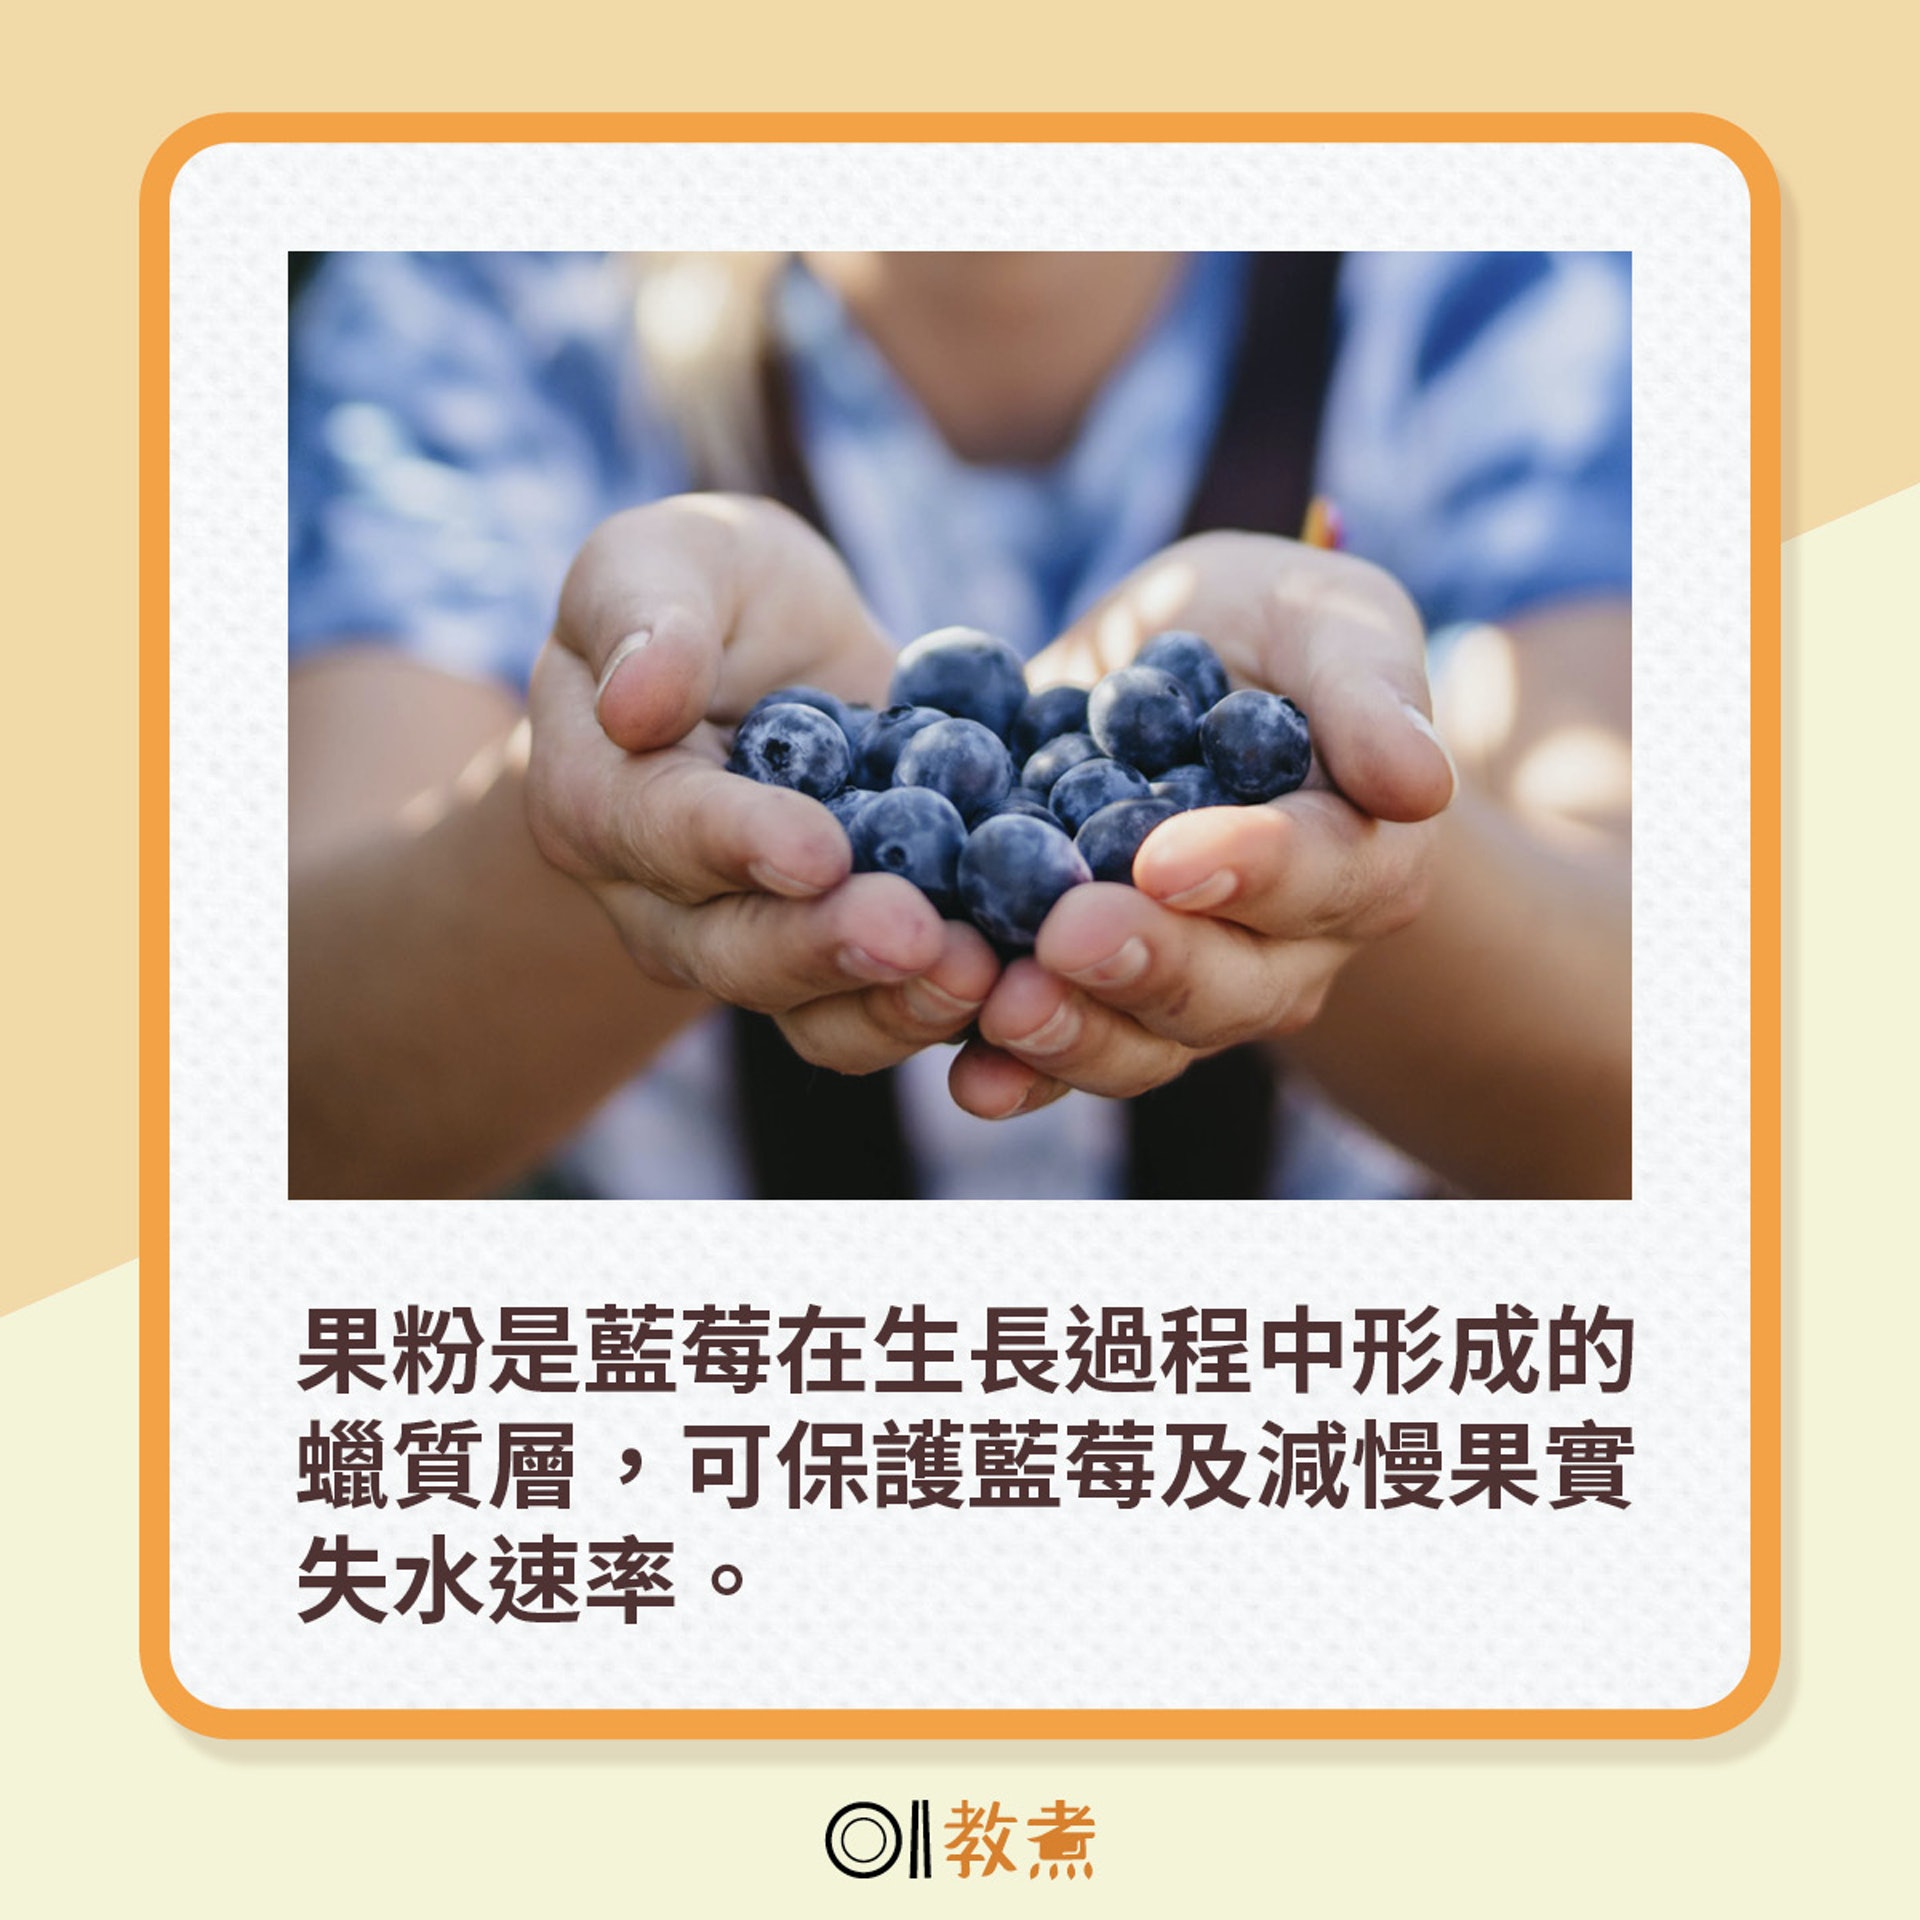 果粉是藍莓在生長過程中形成的蠟質層，可保護藍莓及減慢果實失水速率。（Vince Fleming＠Unsplash）